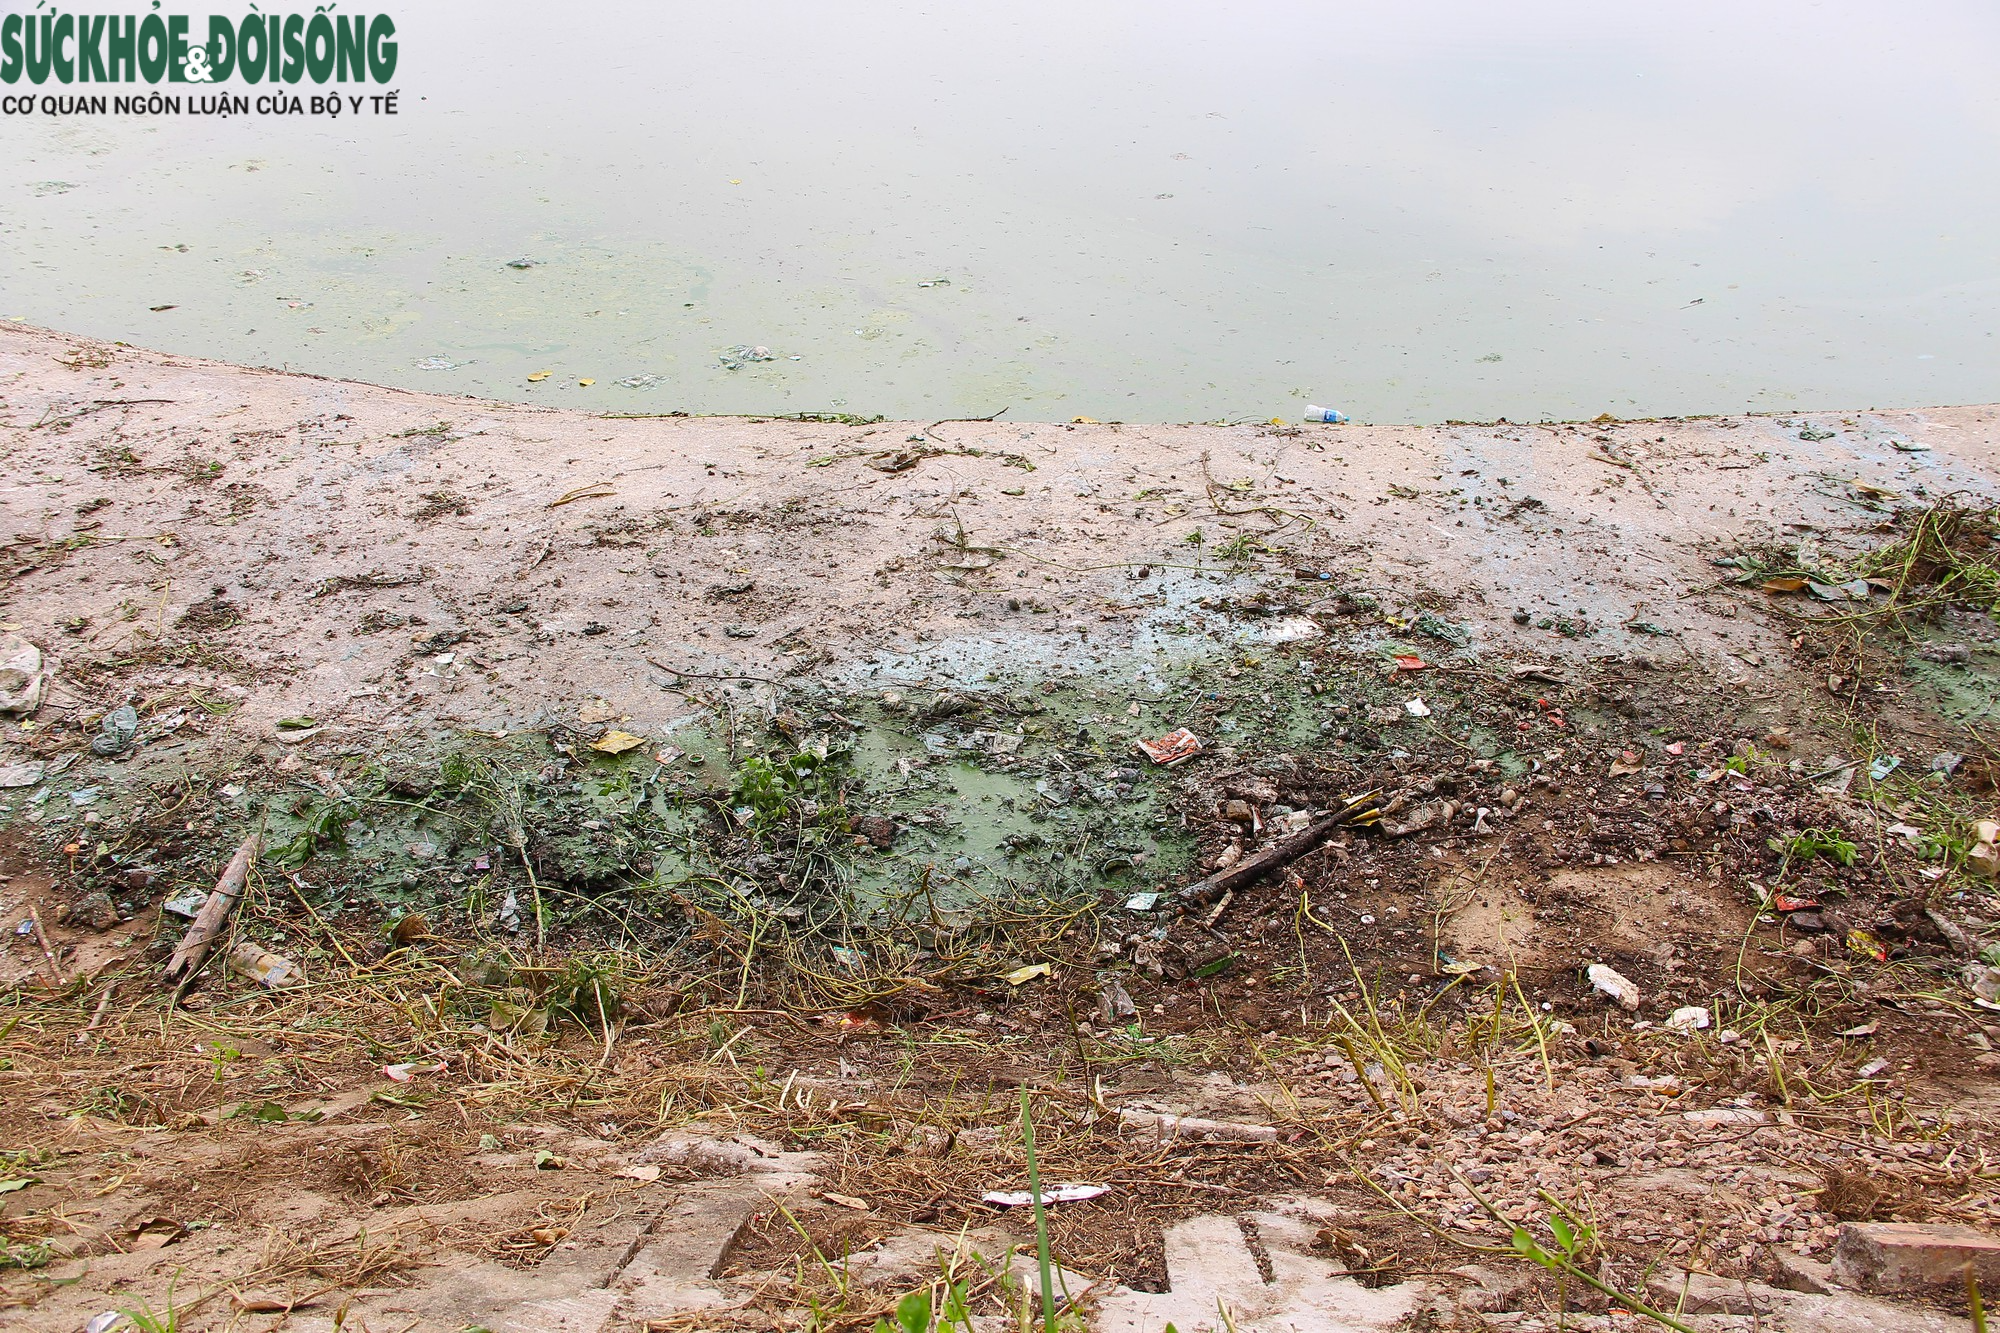 Hồ nước tại trung tâm Hà Nội ô nhiễm, mặt hồ nổi mảng bám, nước bốc mùi - Ảnh 7.